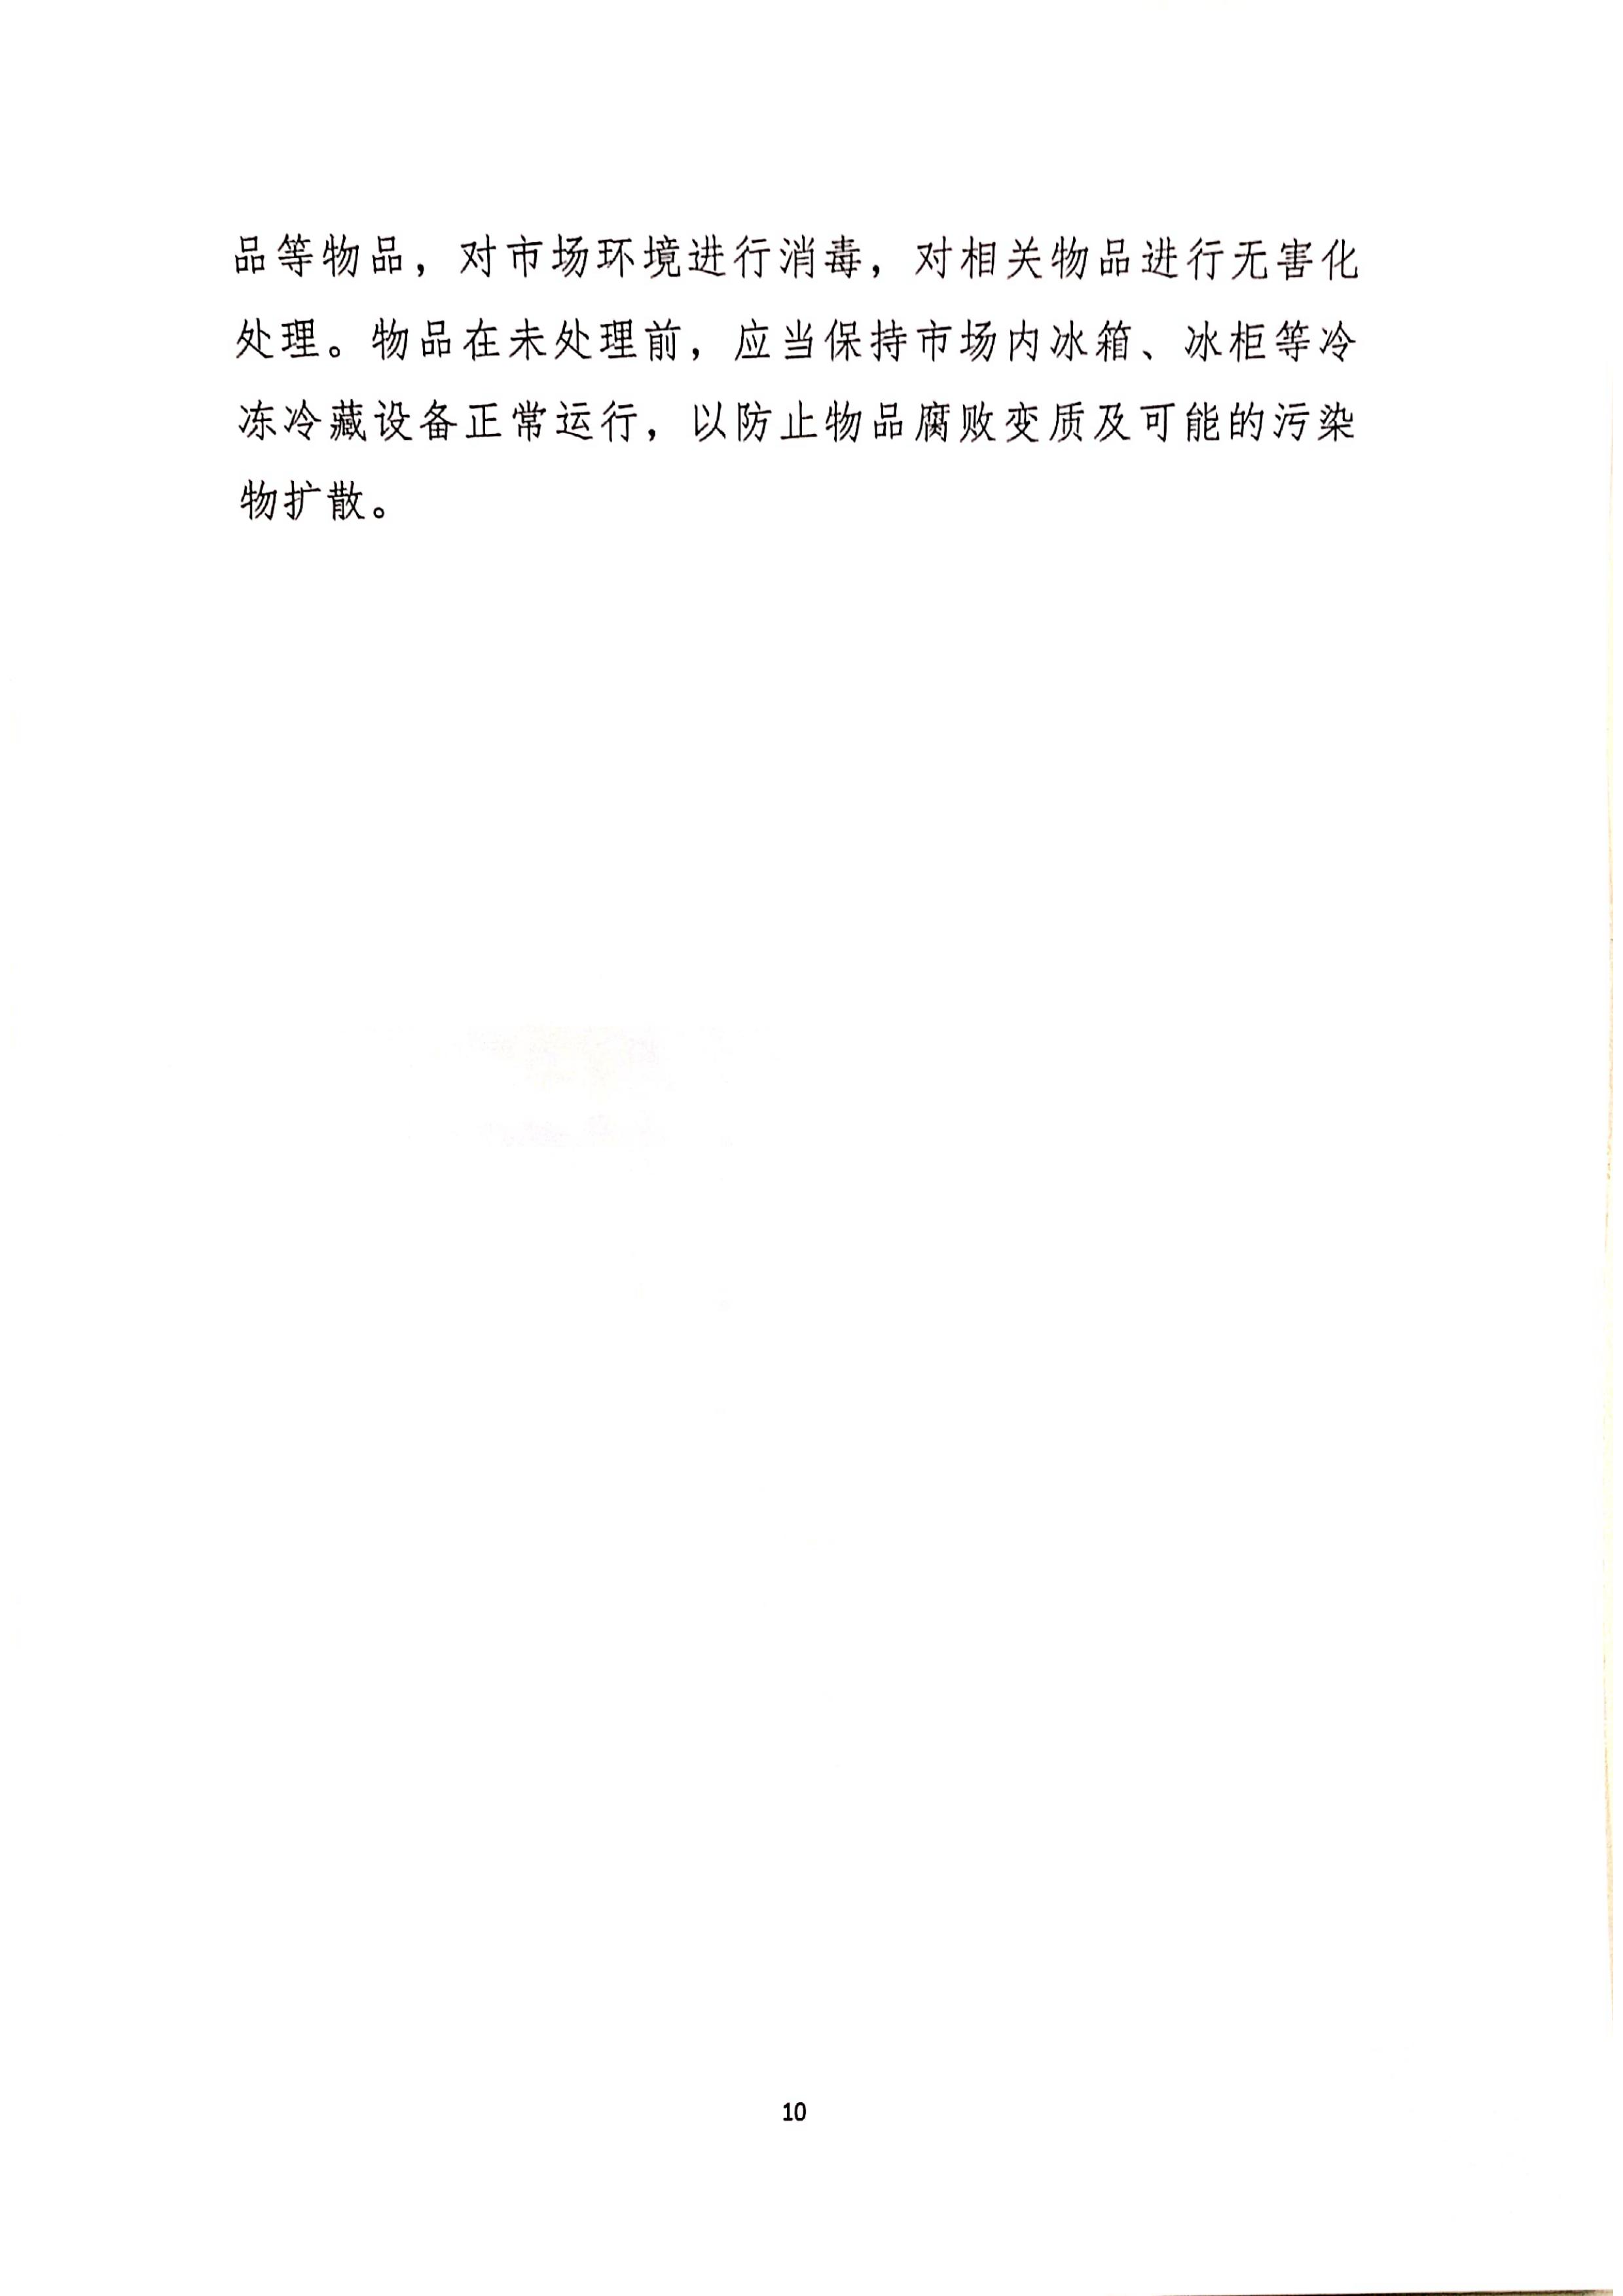 发文4号-关于印发《上海市商场、超市疫情防控技术指南》等4个指南的通知_10.jpg